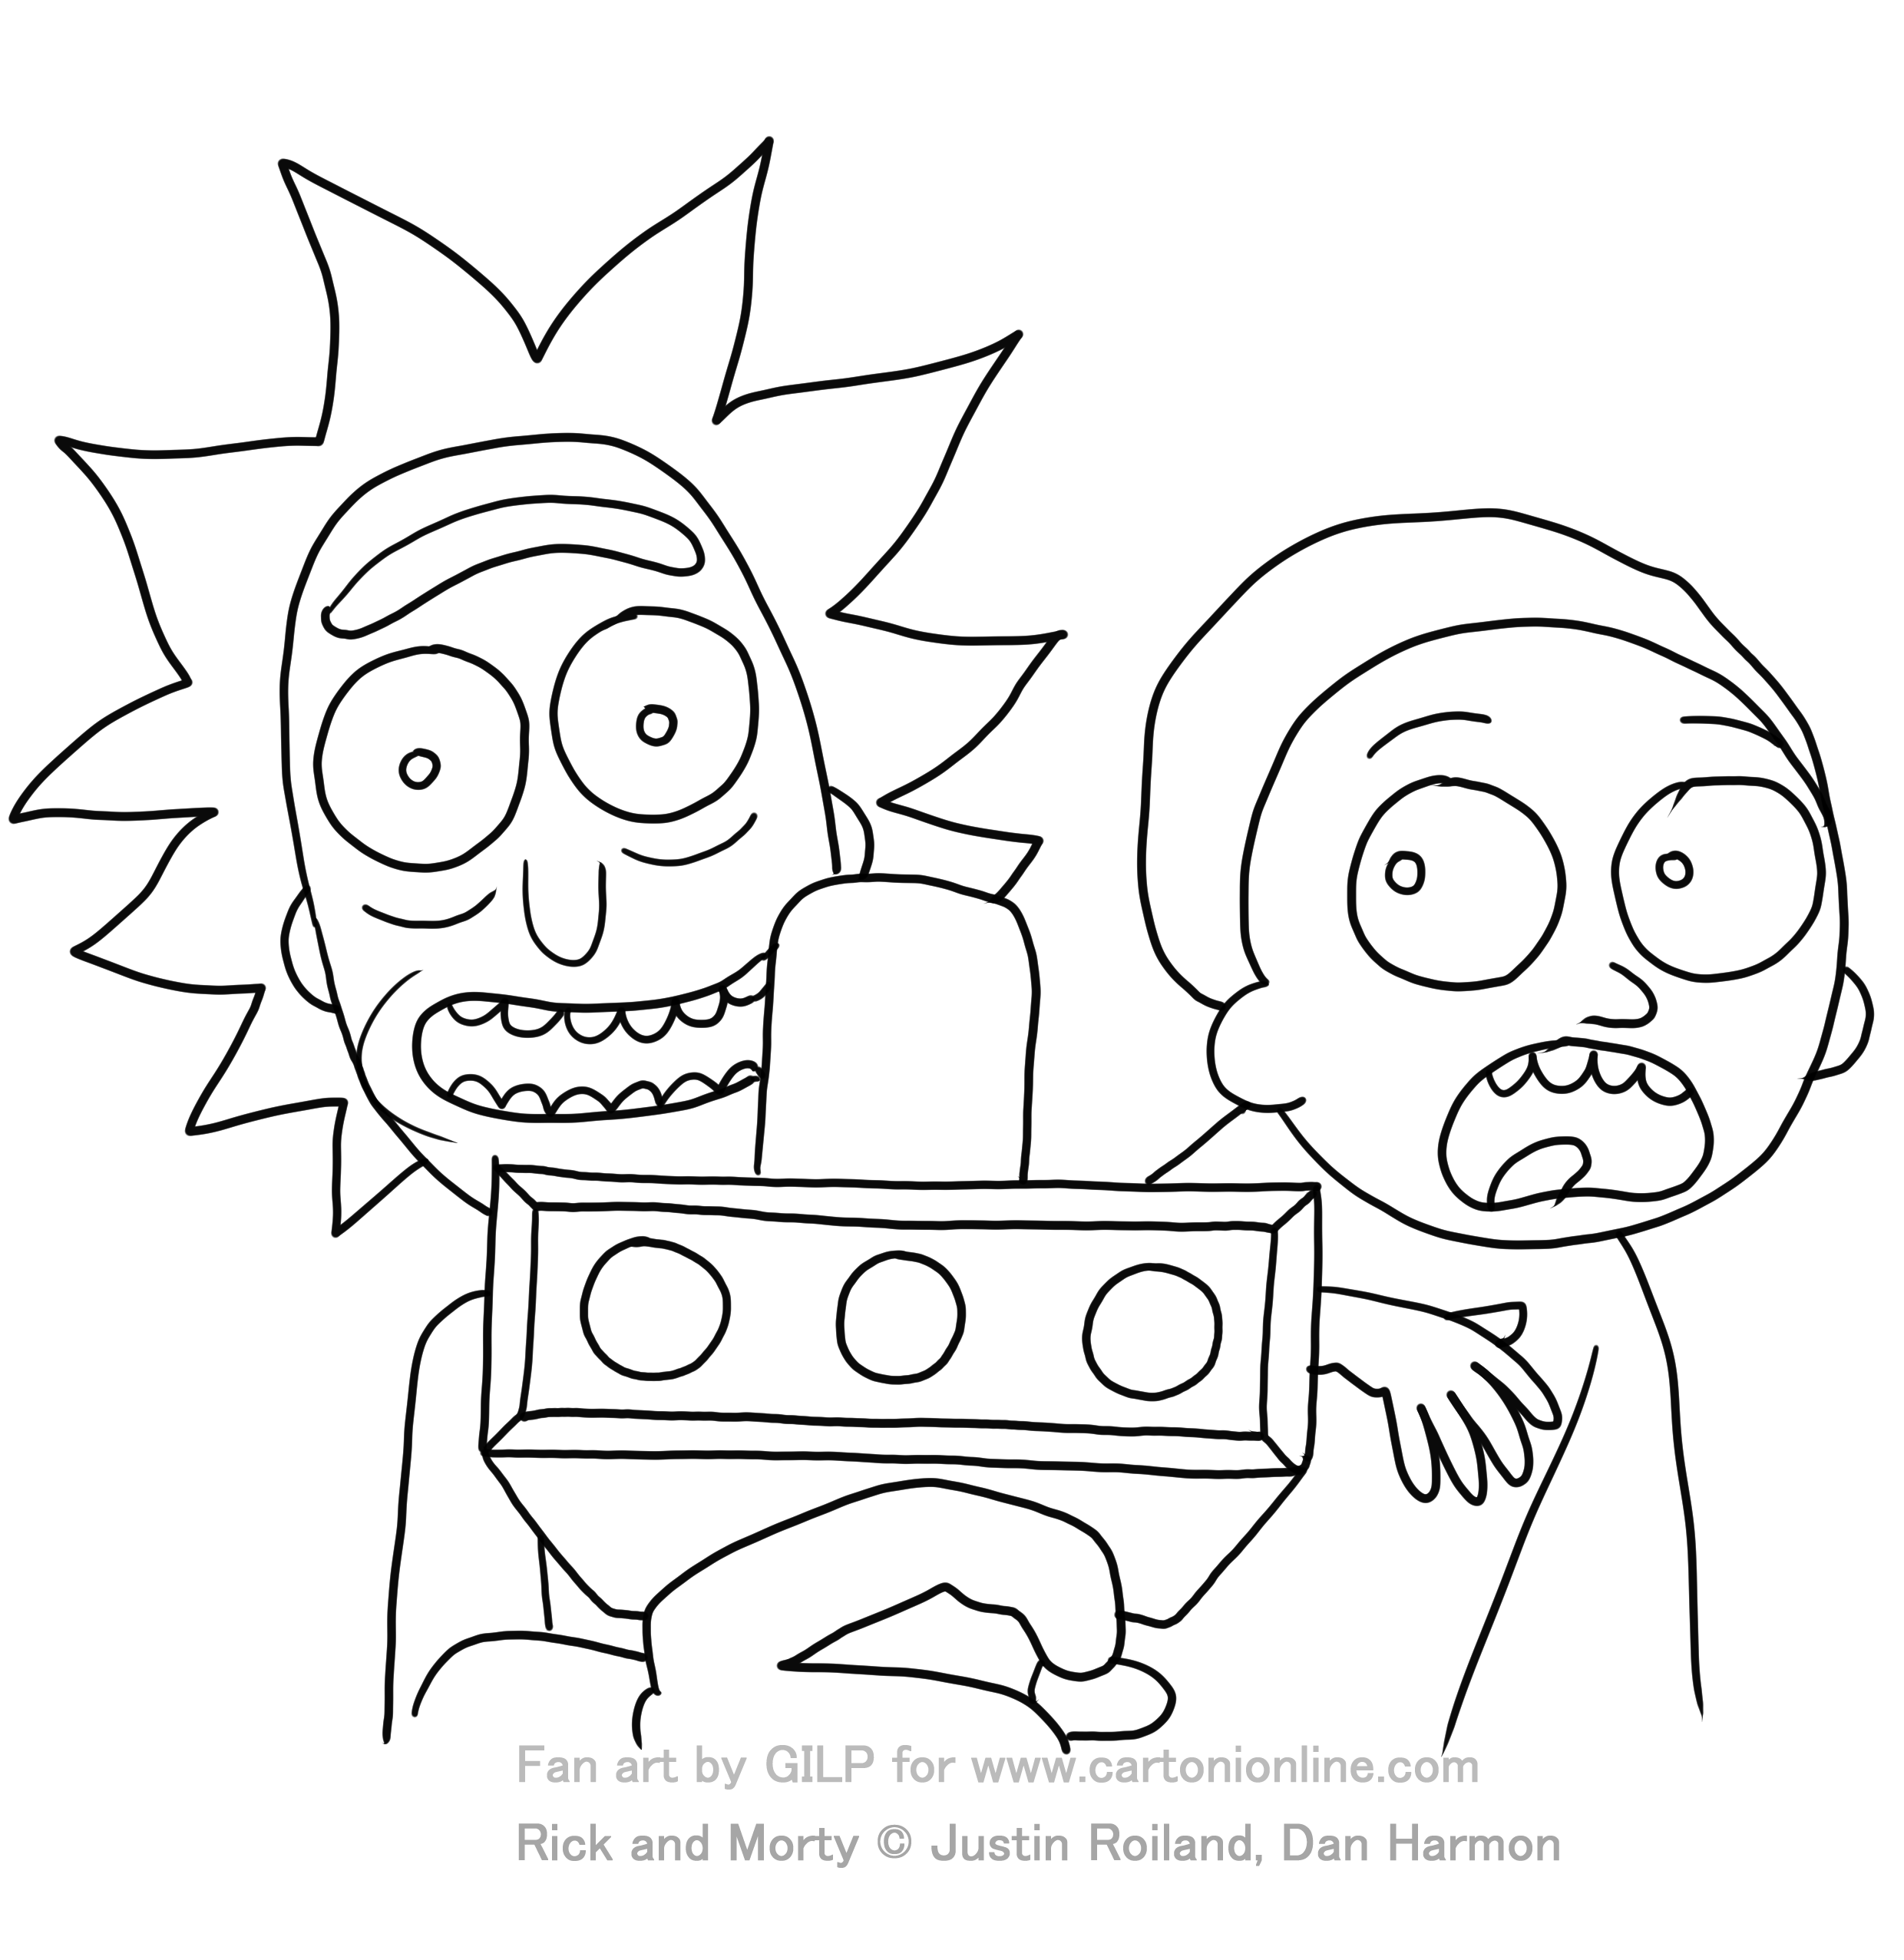 Dibujo de Rick y Morty 04 de Rick y Morty para imprimir y colorear